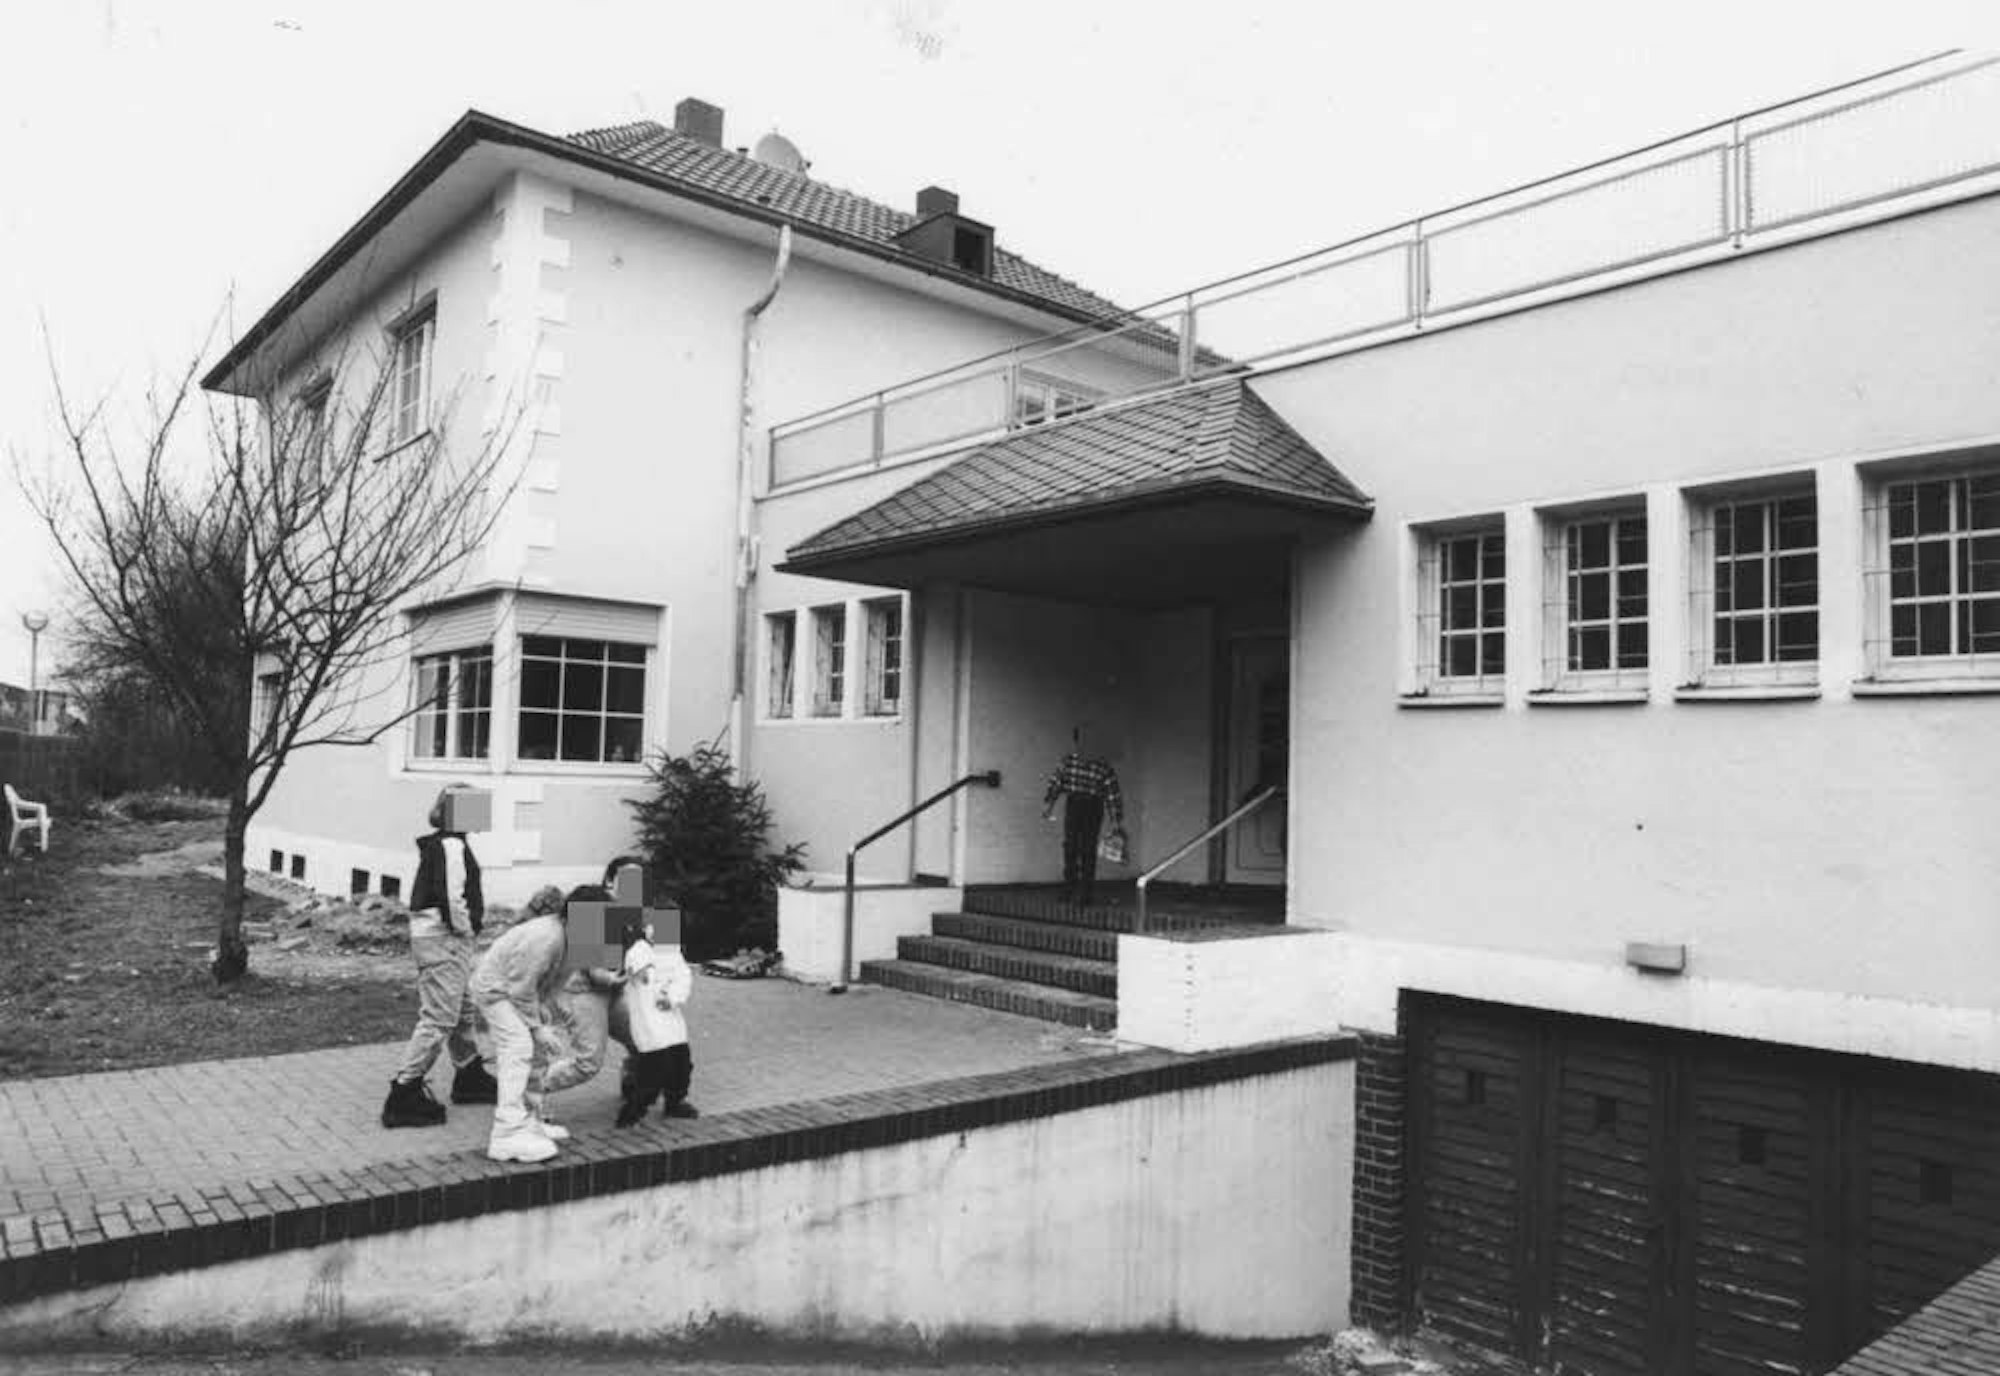 Ehemalige Wohnstätte eines Teils der Familie: Das Haus an der Ecke Syltstraße/Gustav-Heinemann-Straße. Die Inneneinrichtung wurde beim Auszug zerstört.